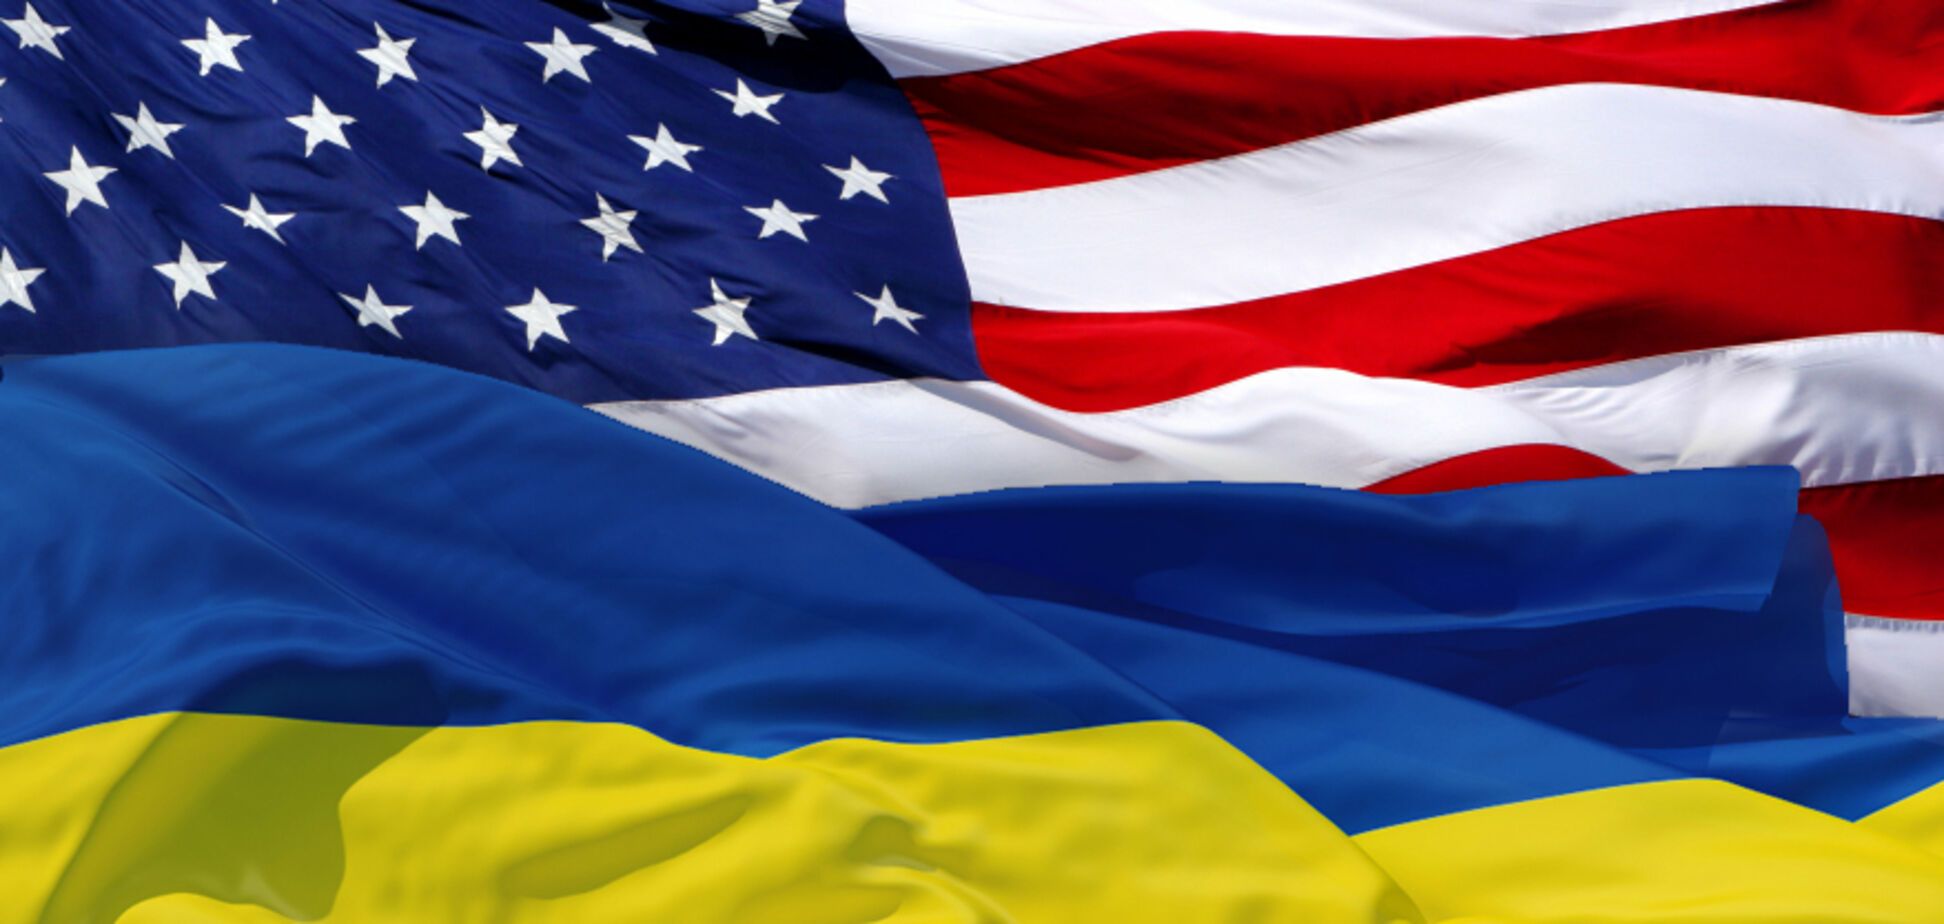 Що з летальноъ зброї Україна закуповувала у США в 2017 році: документ